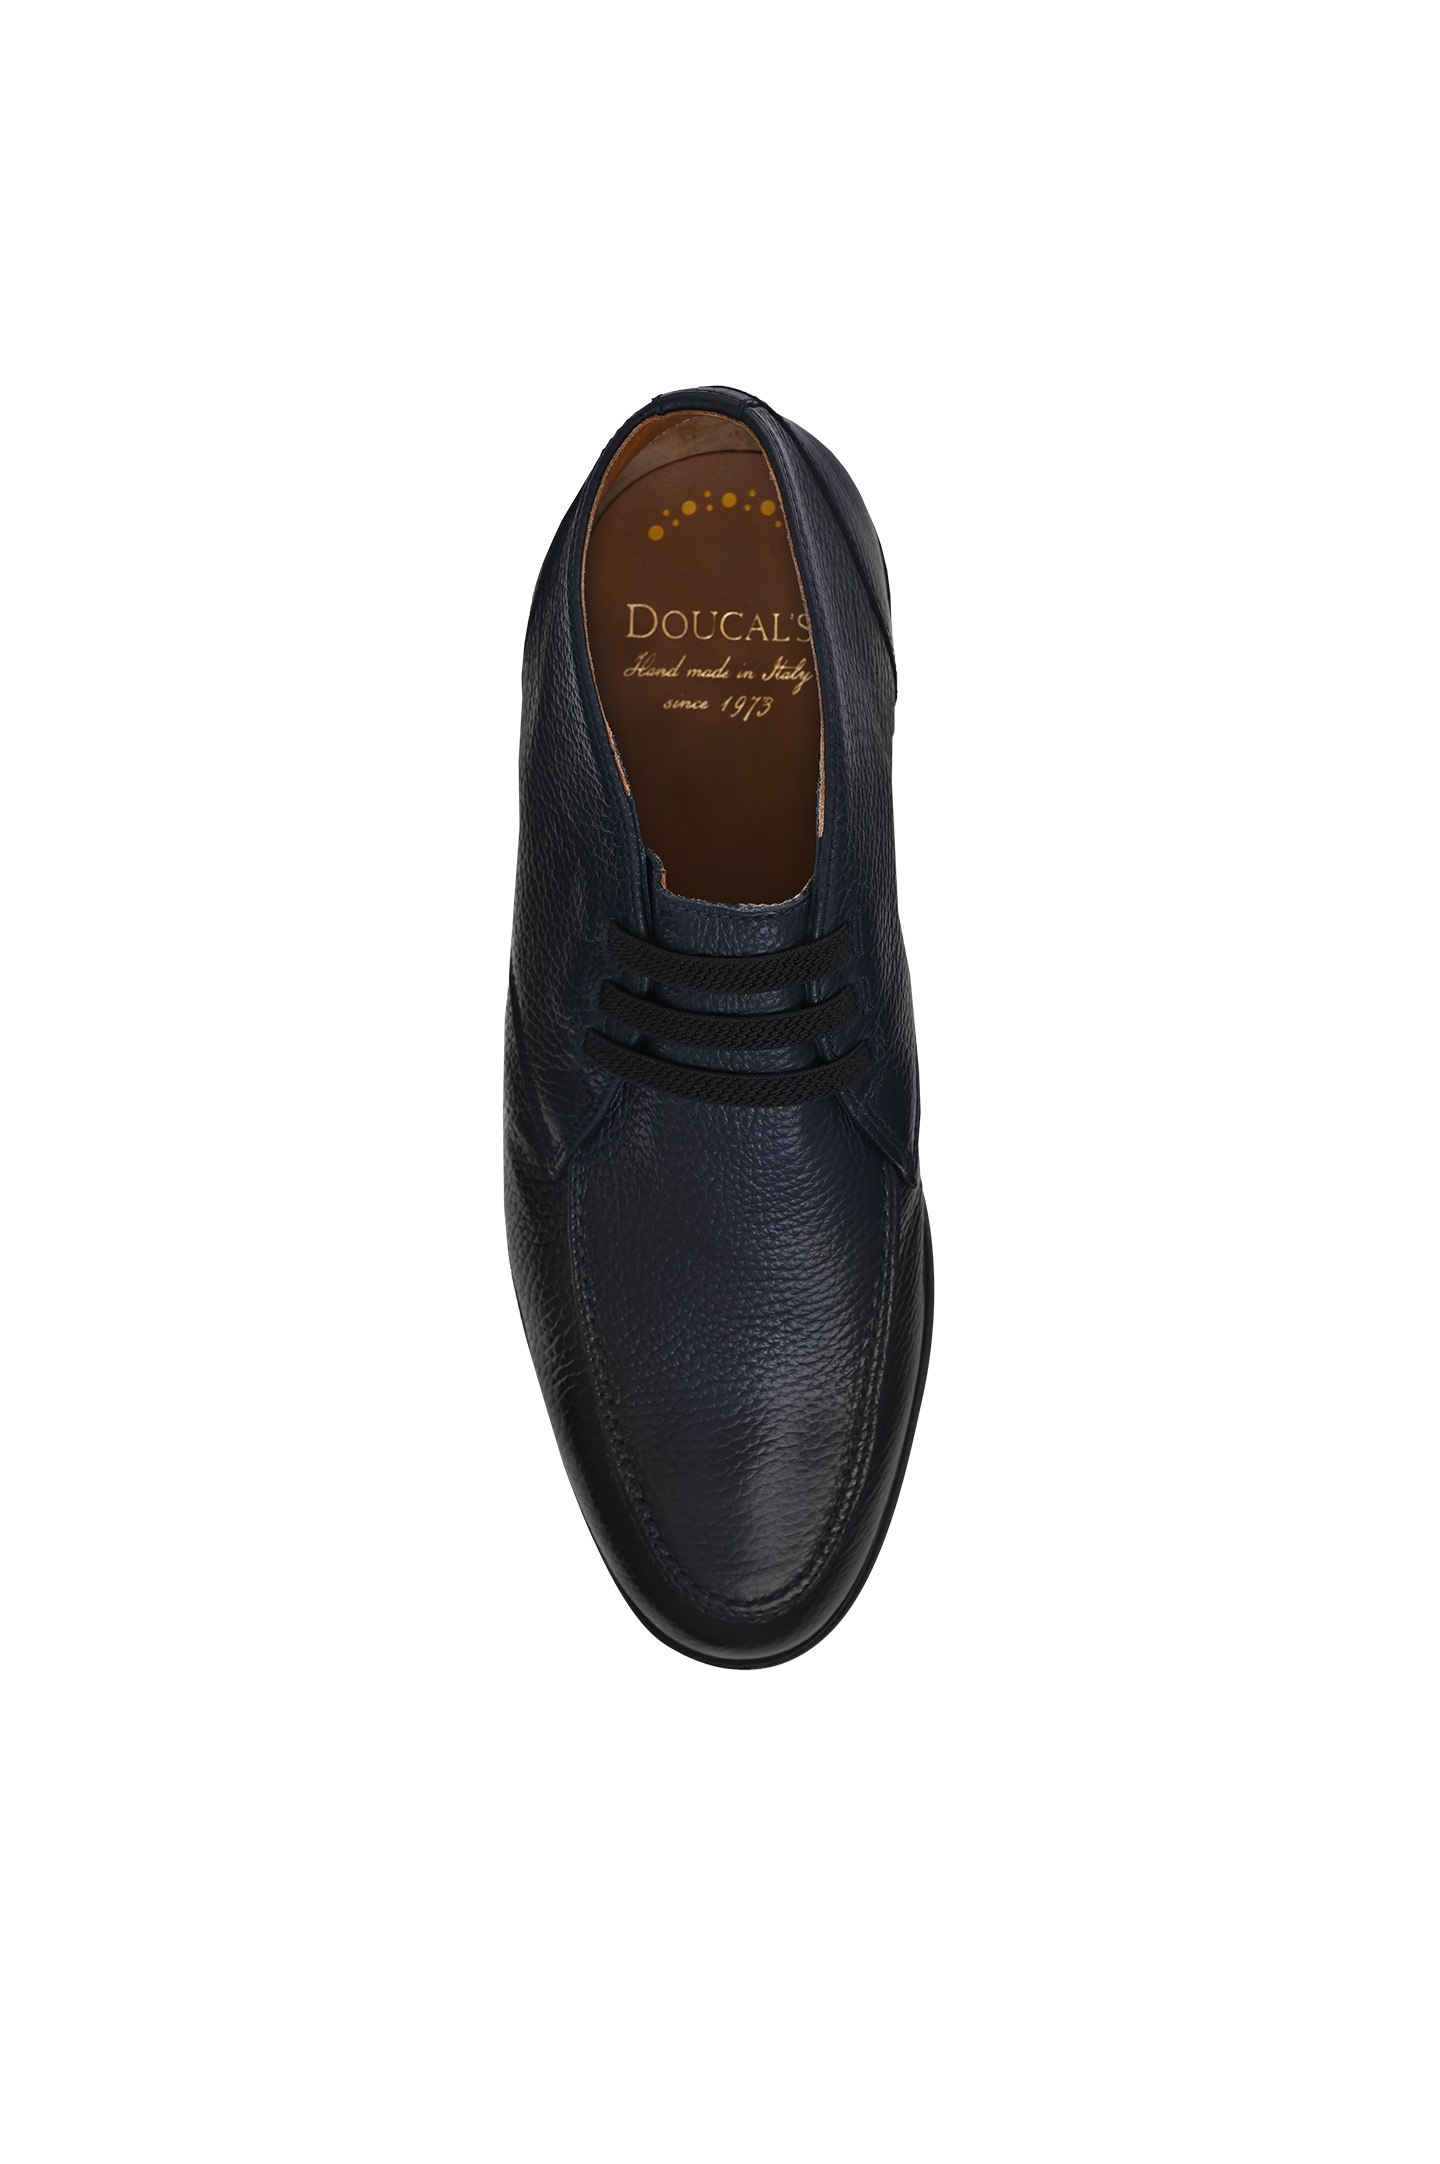 Туфли DOUCAL'S DU3235EDO-UF019, цвет: Черный, Мужской